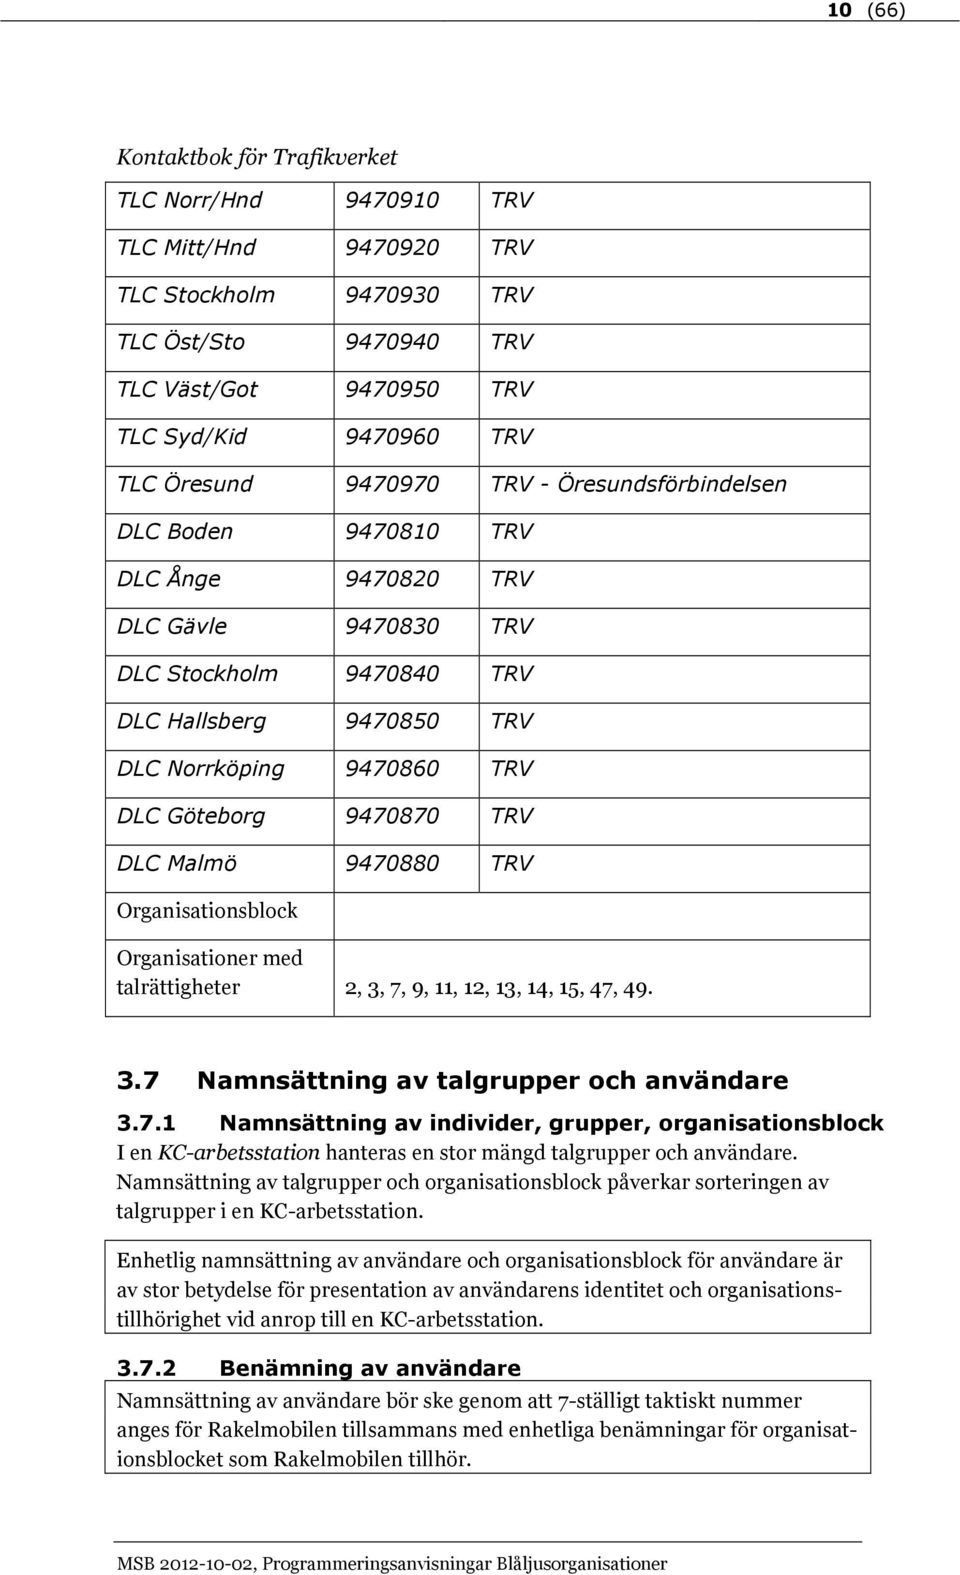 TRV DLC Malmö 9470880 TRV talrättigheter 2, 3, 7, 9, 11, 12, 13, 14, 15, 47, 49. 3.7 Namnsättning av talgrupper och användare 3.7.1 Namnsättning av individer, grupper, organisationsblock I en KC-arbetsstation hanteras en stor mängd talgrupper och användare.